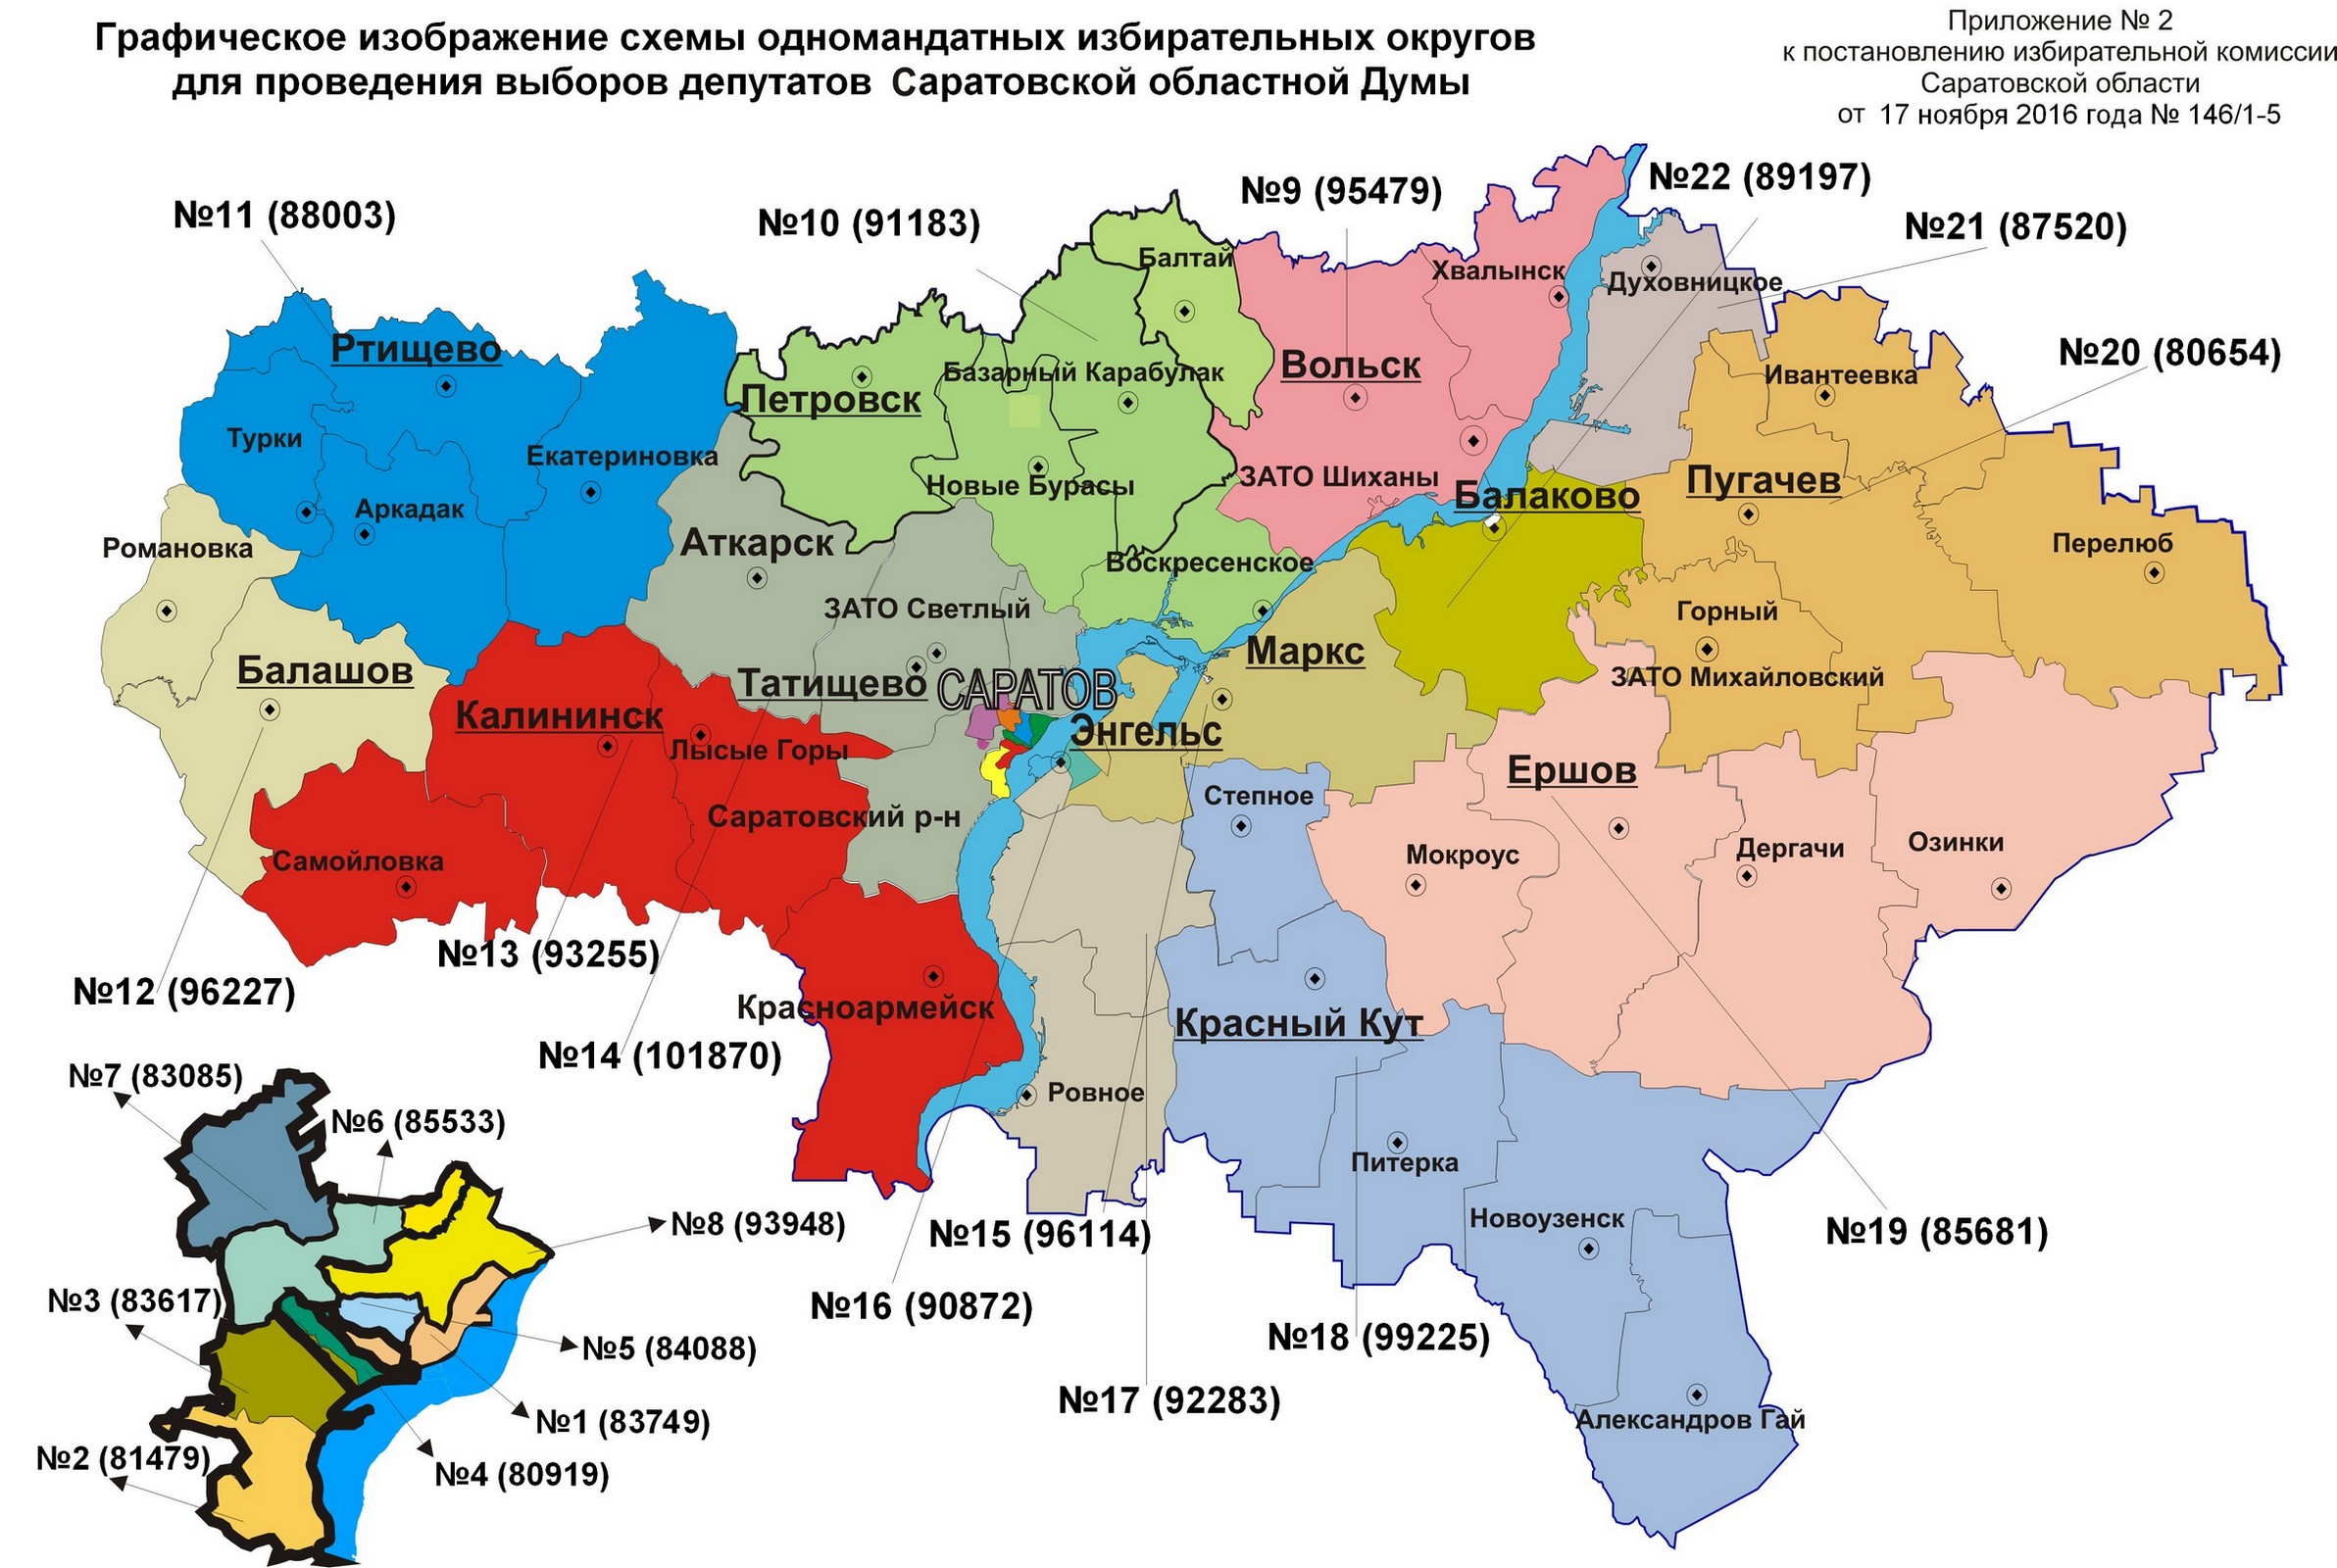 Cхема округов для выборов в Саратовскую областную думу